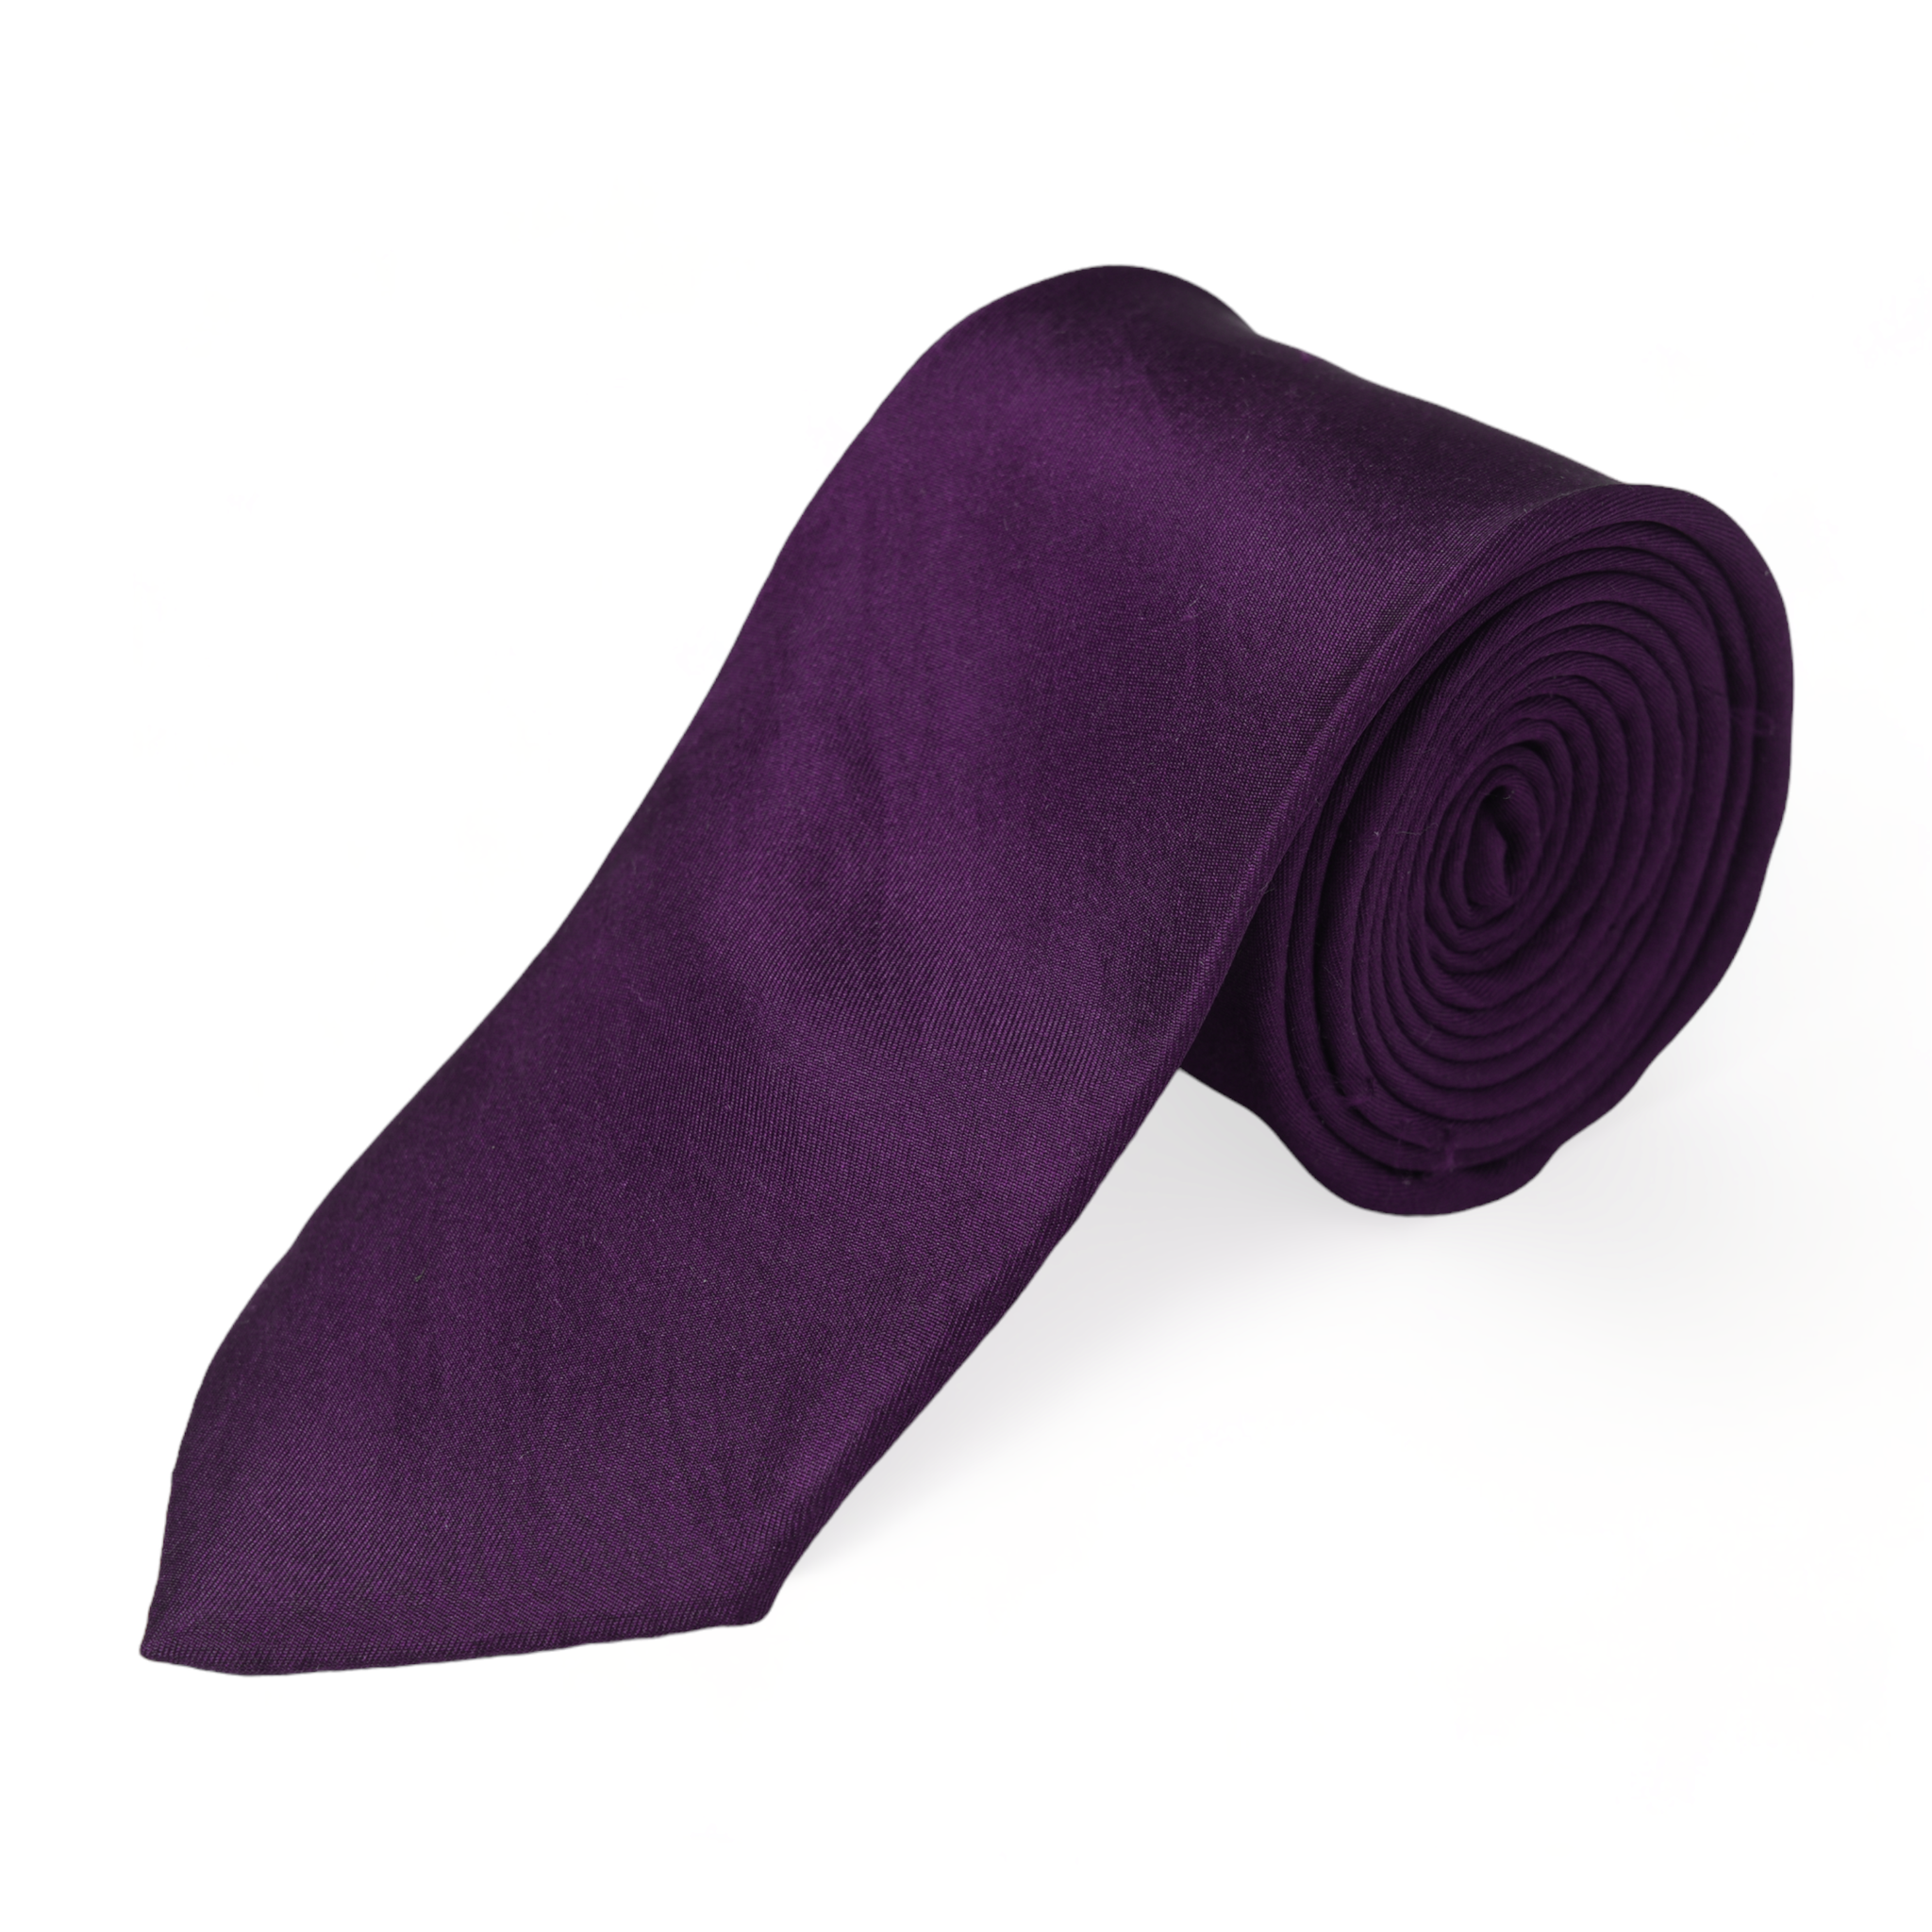 Chokore Purple Silk Tie - Solids range